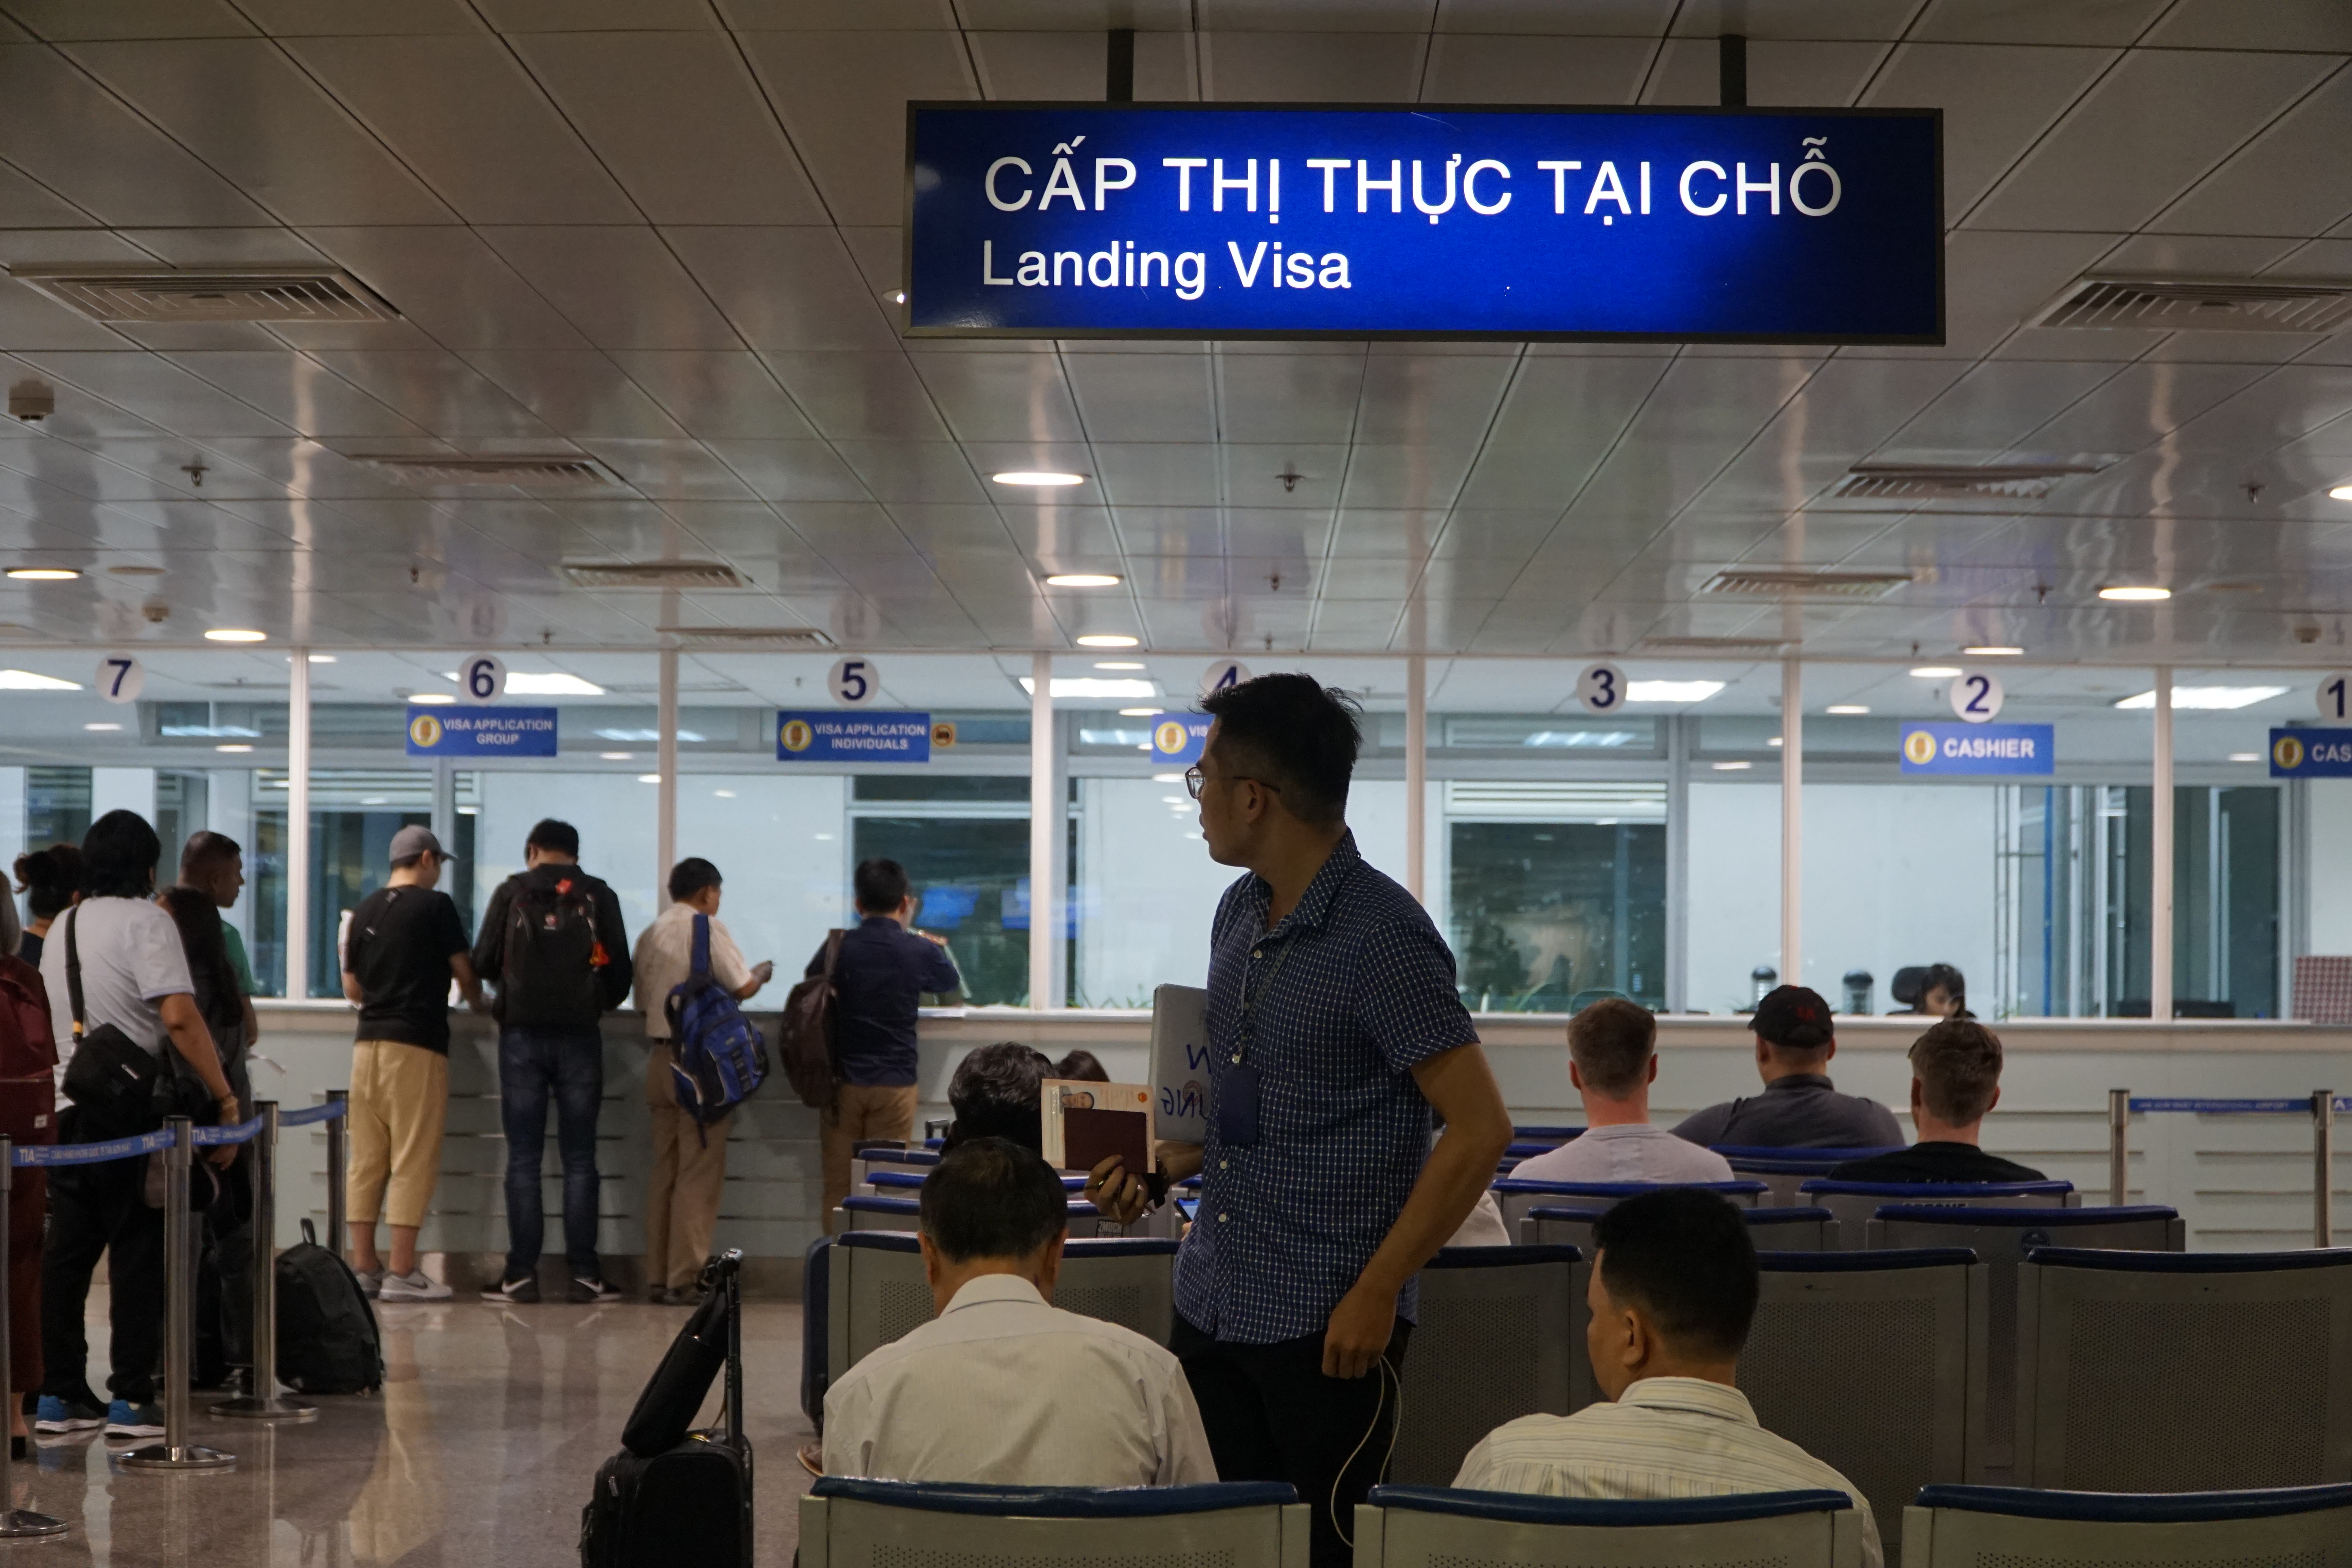 Watter dokumente is nodig om ‘n visum te ontvang wanneer jy in Vietnam arriveer?